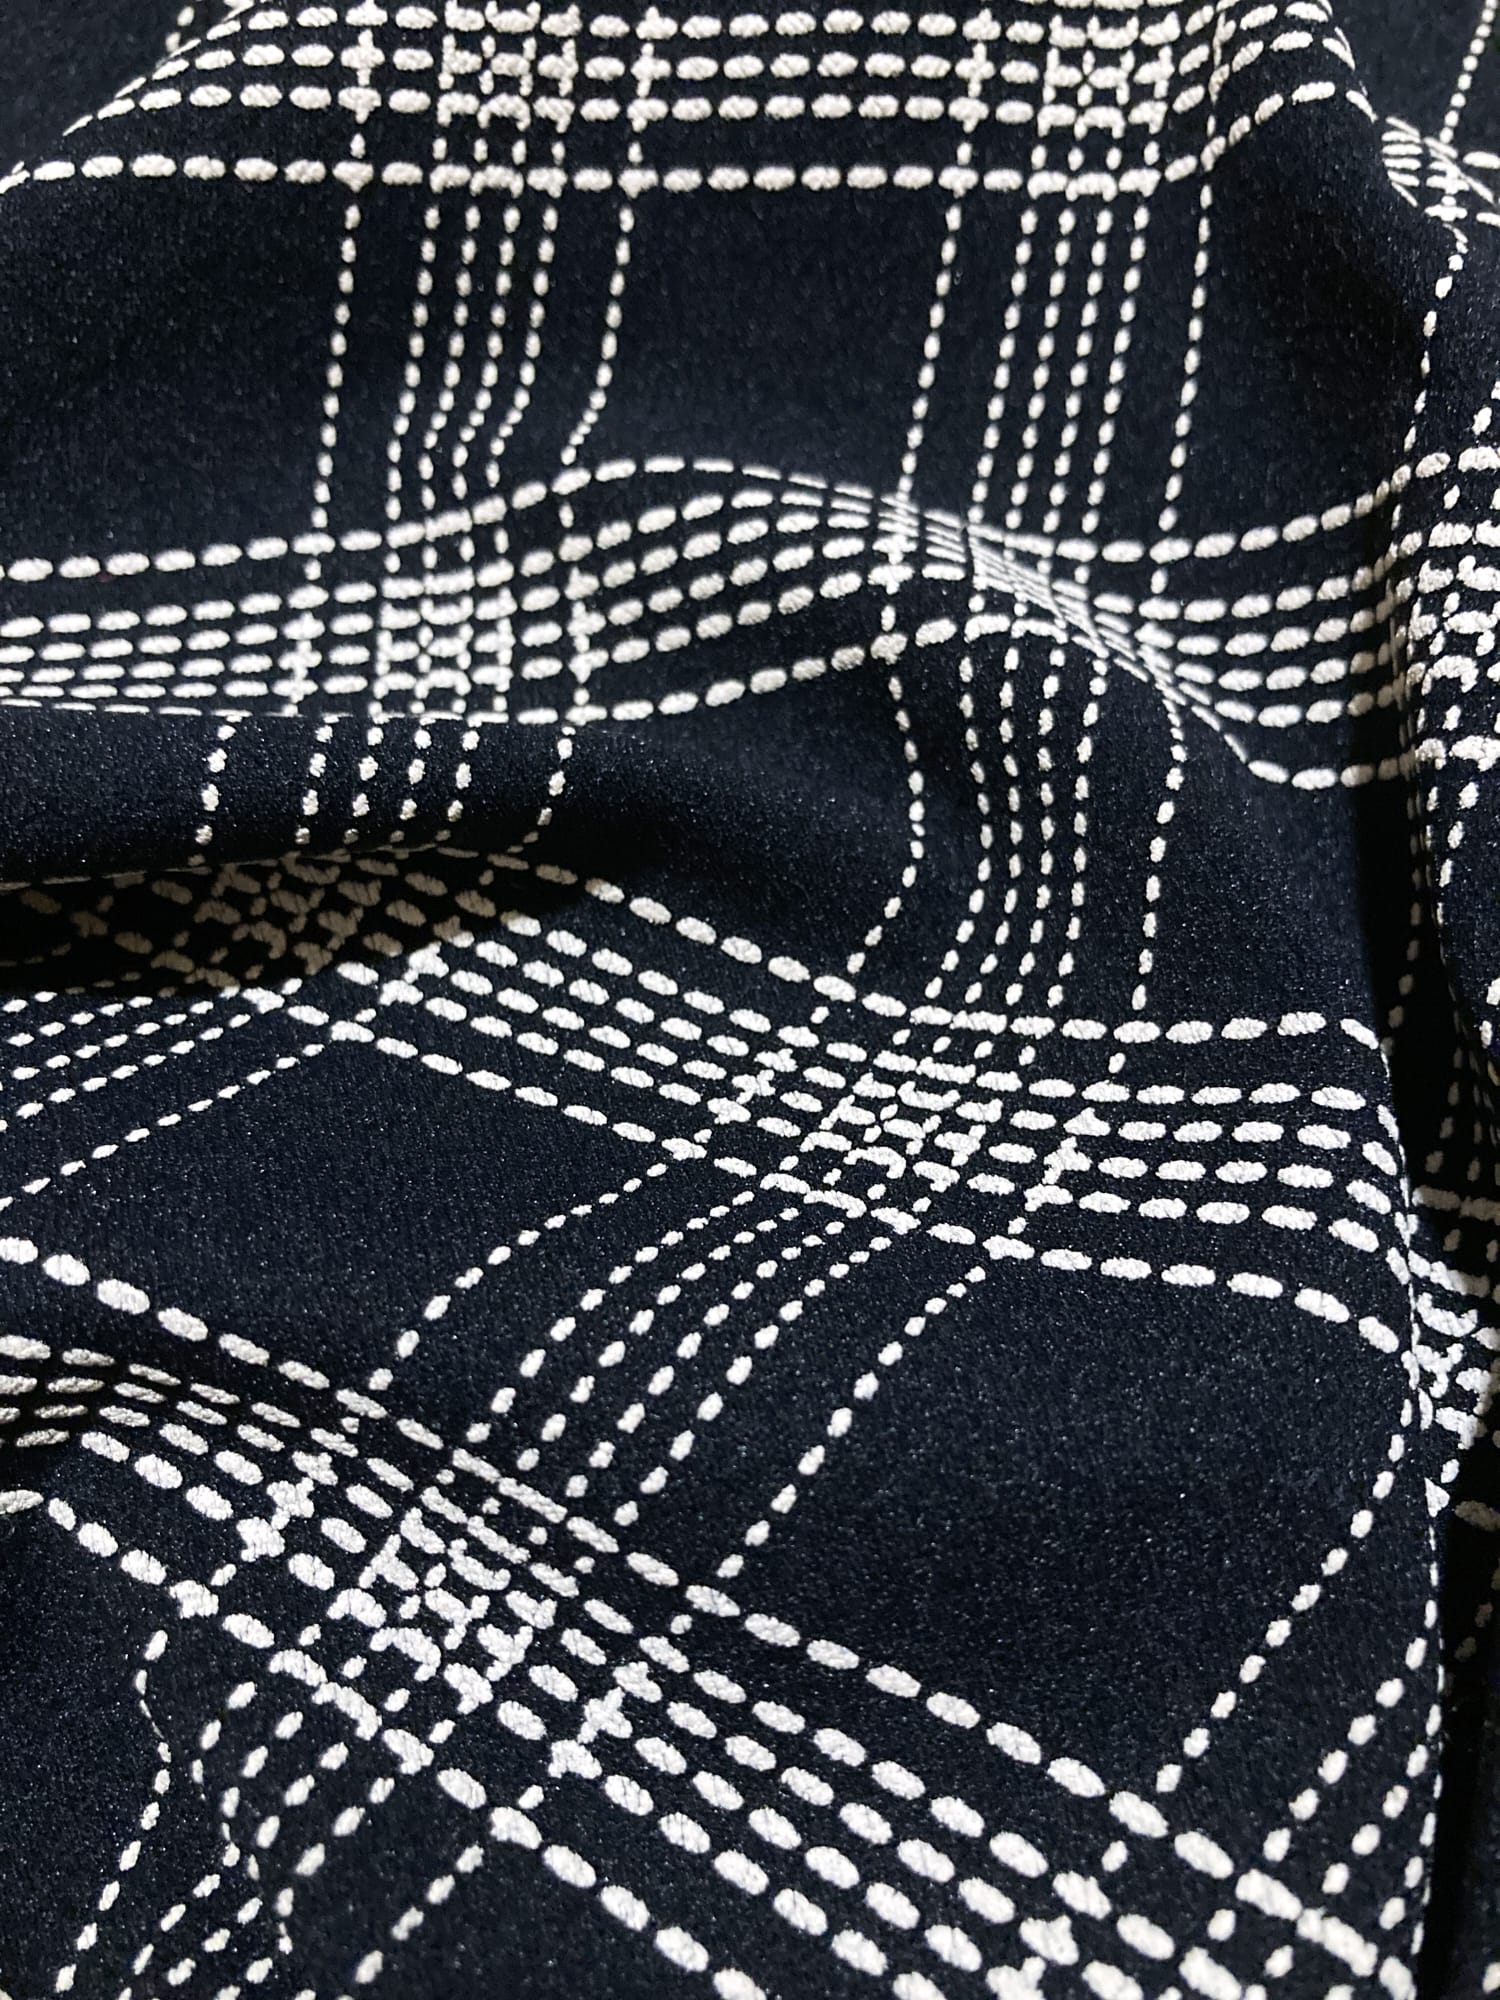 Morgan de Toi black stretch cotton diagonal check long sleeve top